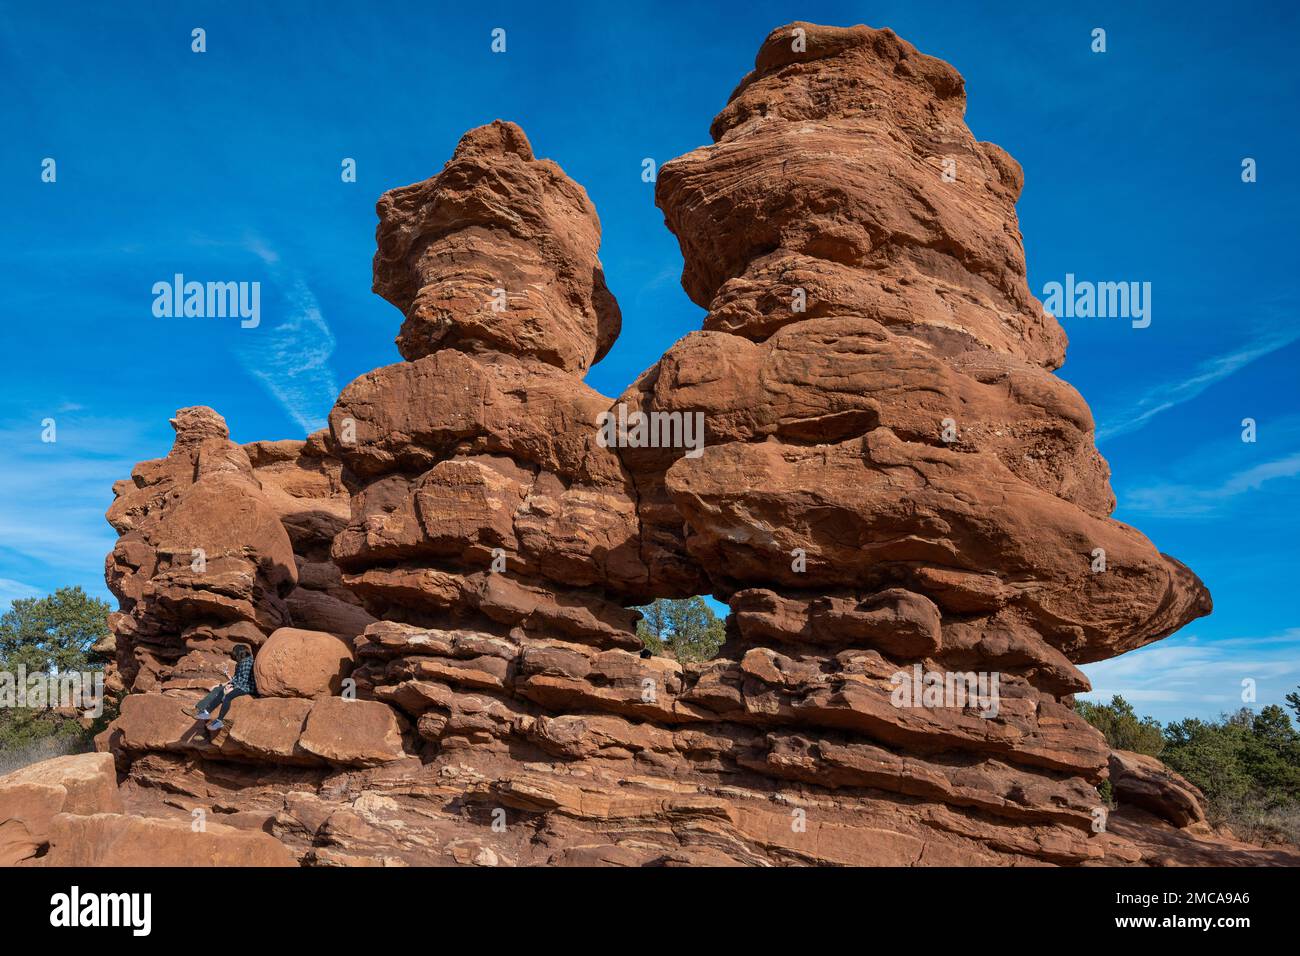 Due pinnacoli di pietra arenaria rossa con una finestra naturale erosa nel loro centro in una posizione naturale circondata da un bel cielo blu chiaro Foto Stock